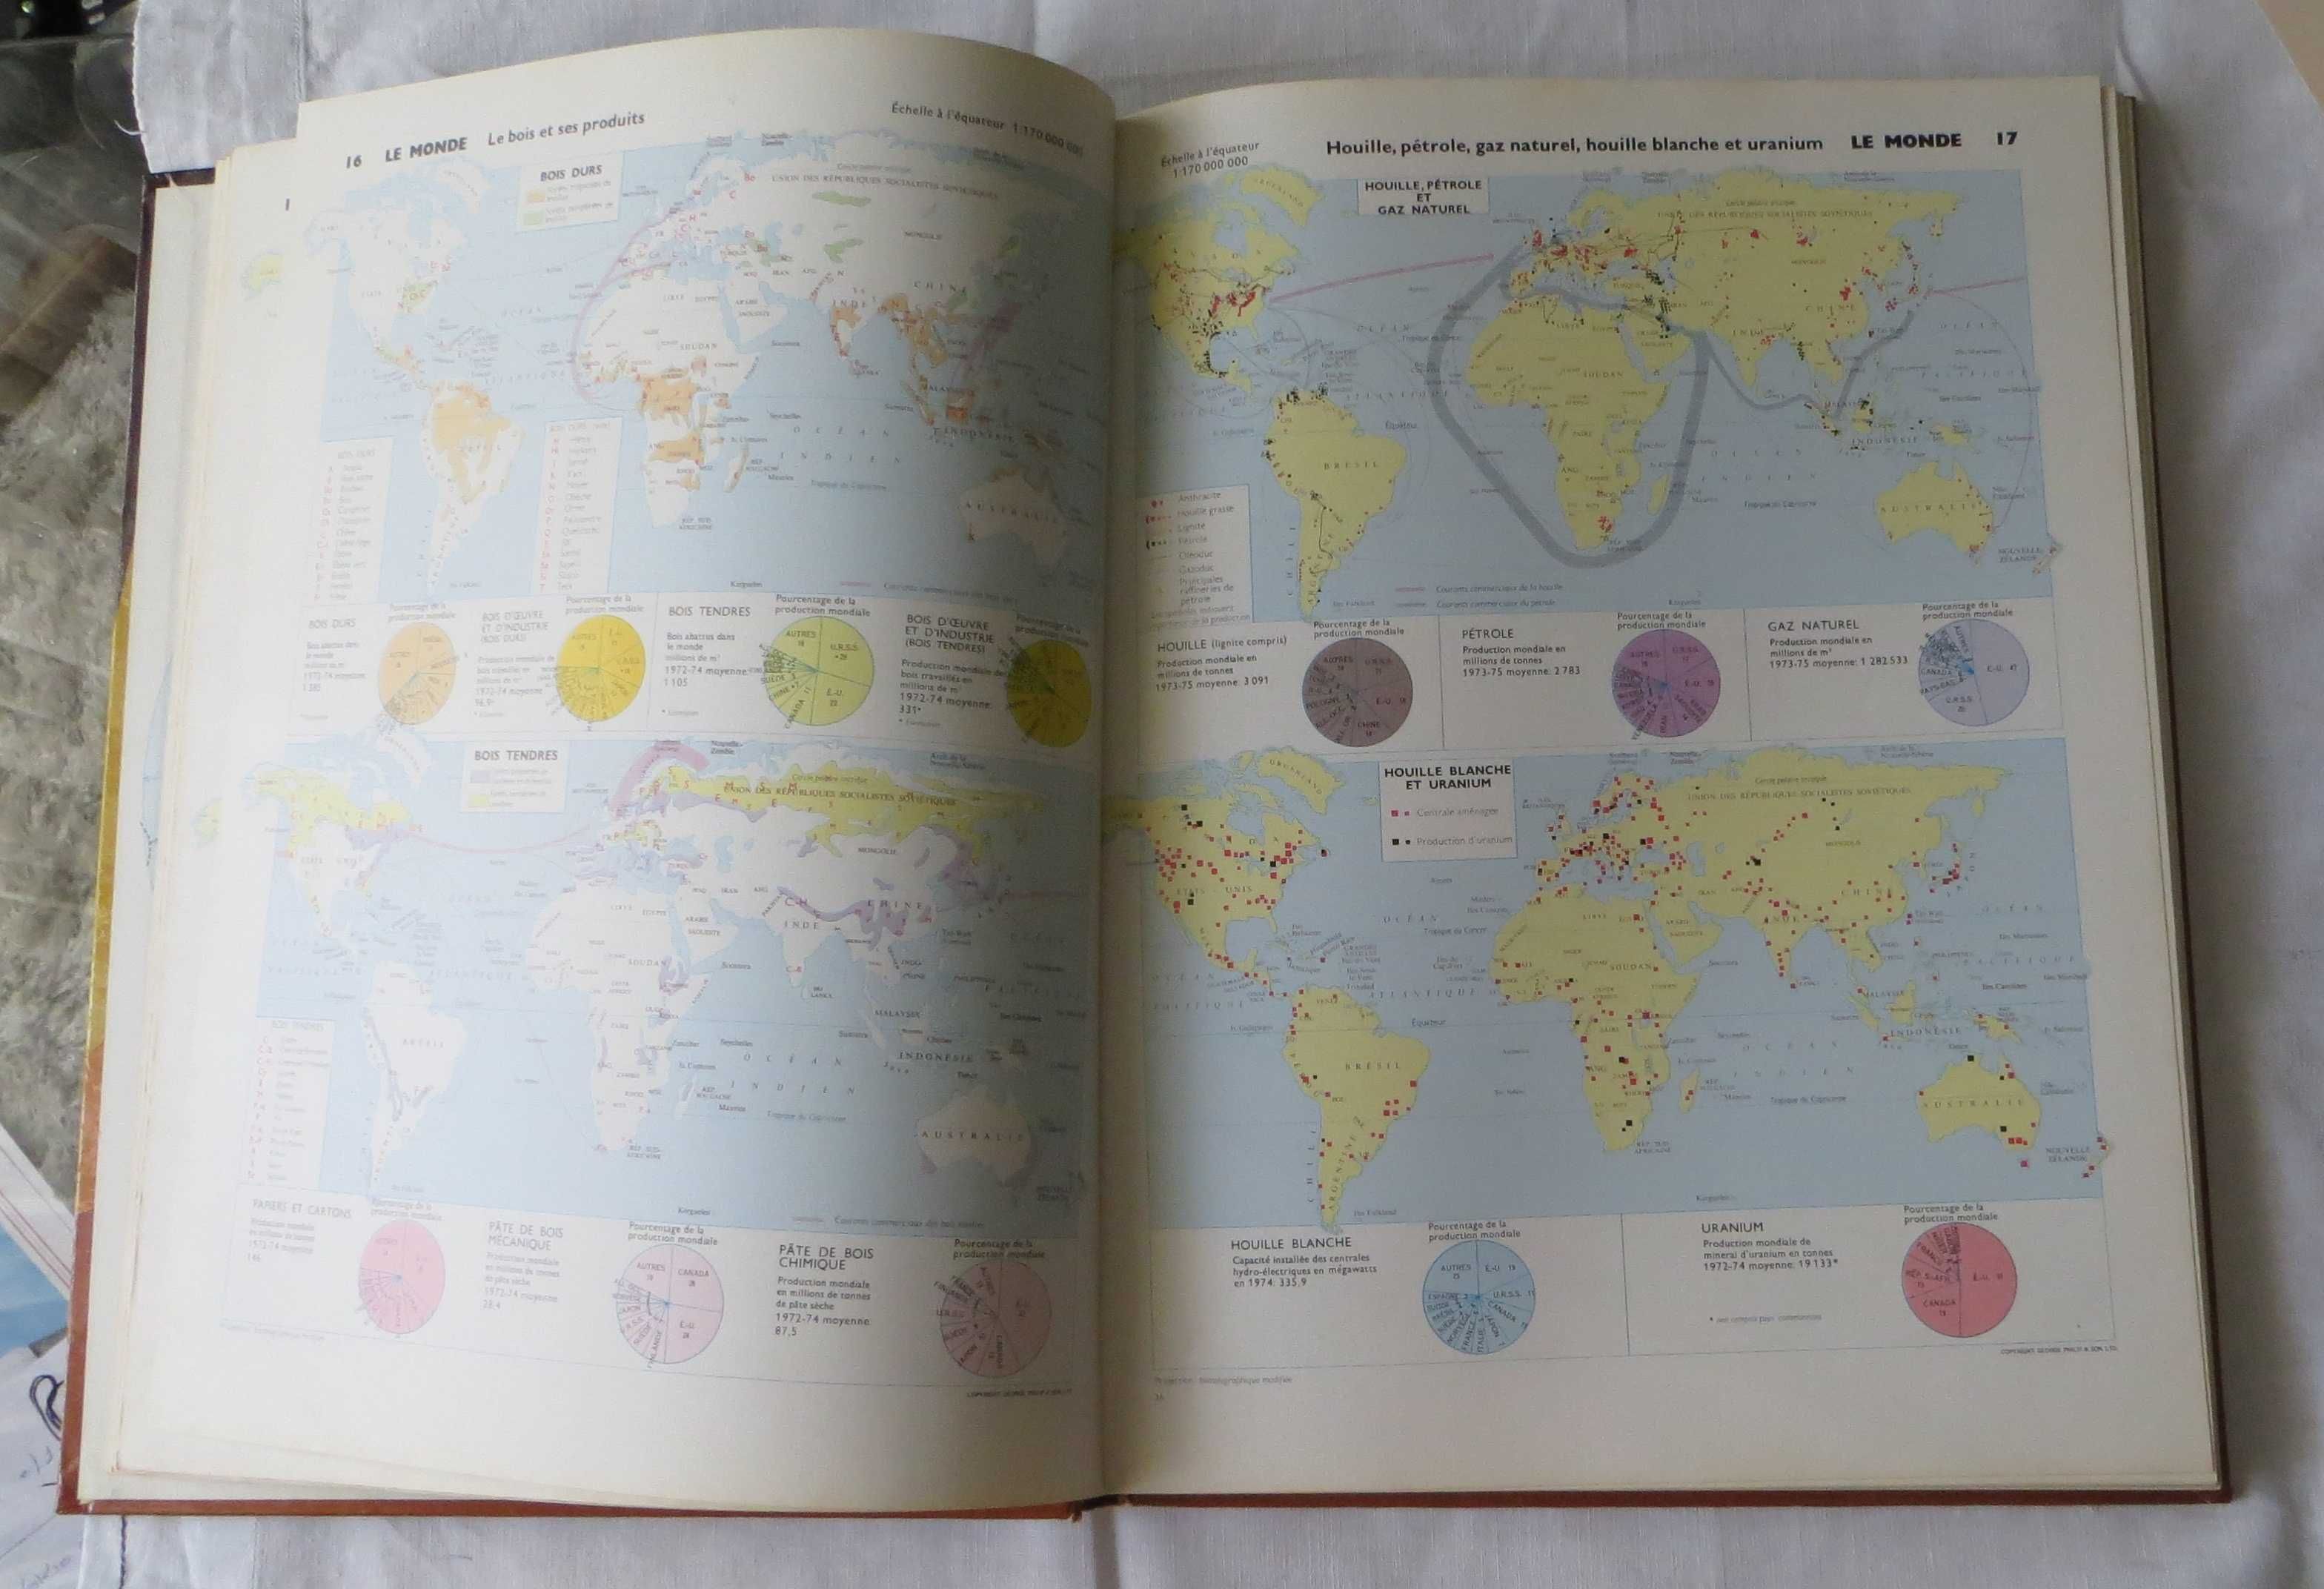 Livro Atlas d´aujourd´hui - A europa dos 9 - Larouse Edição 1977 - FR